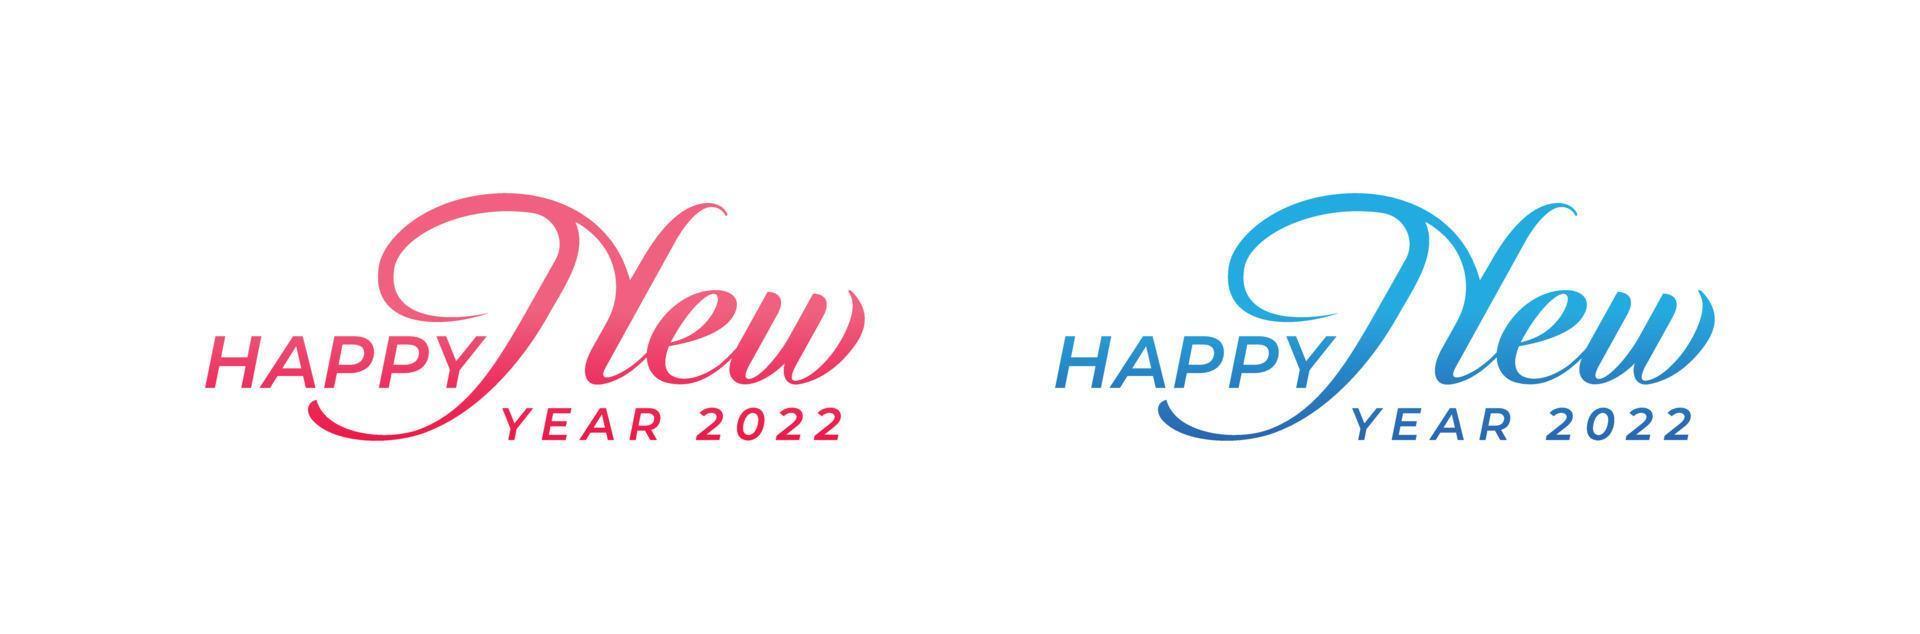 Diseño de logotipo de vector de caligrafía creativa dibujada a mano abstracta. Diseño de logotipo de año nuevo 2022